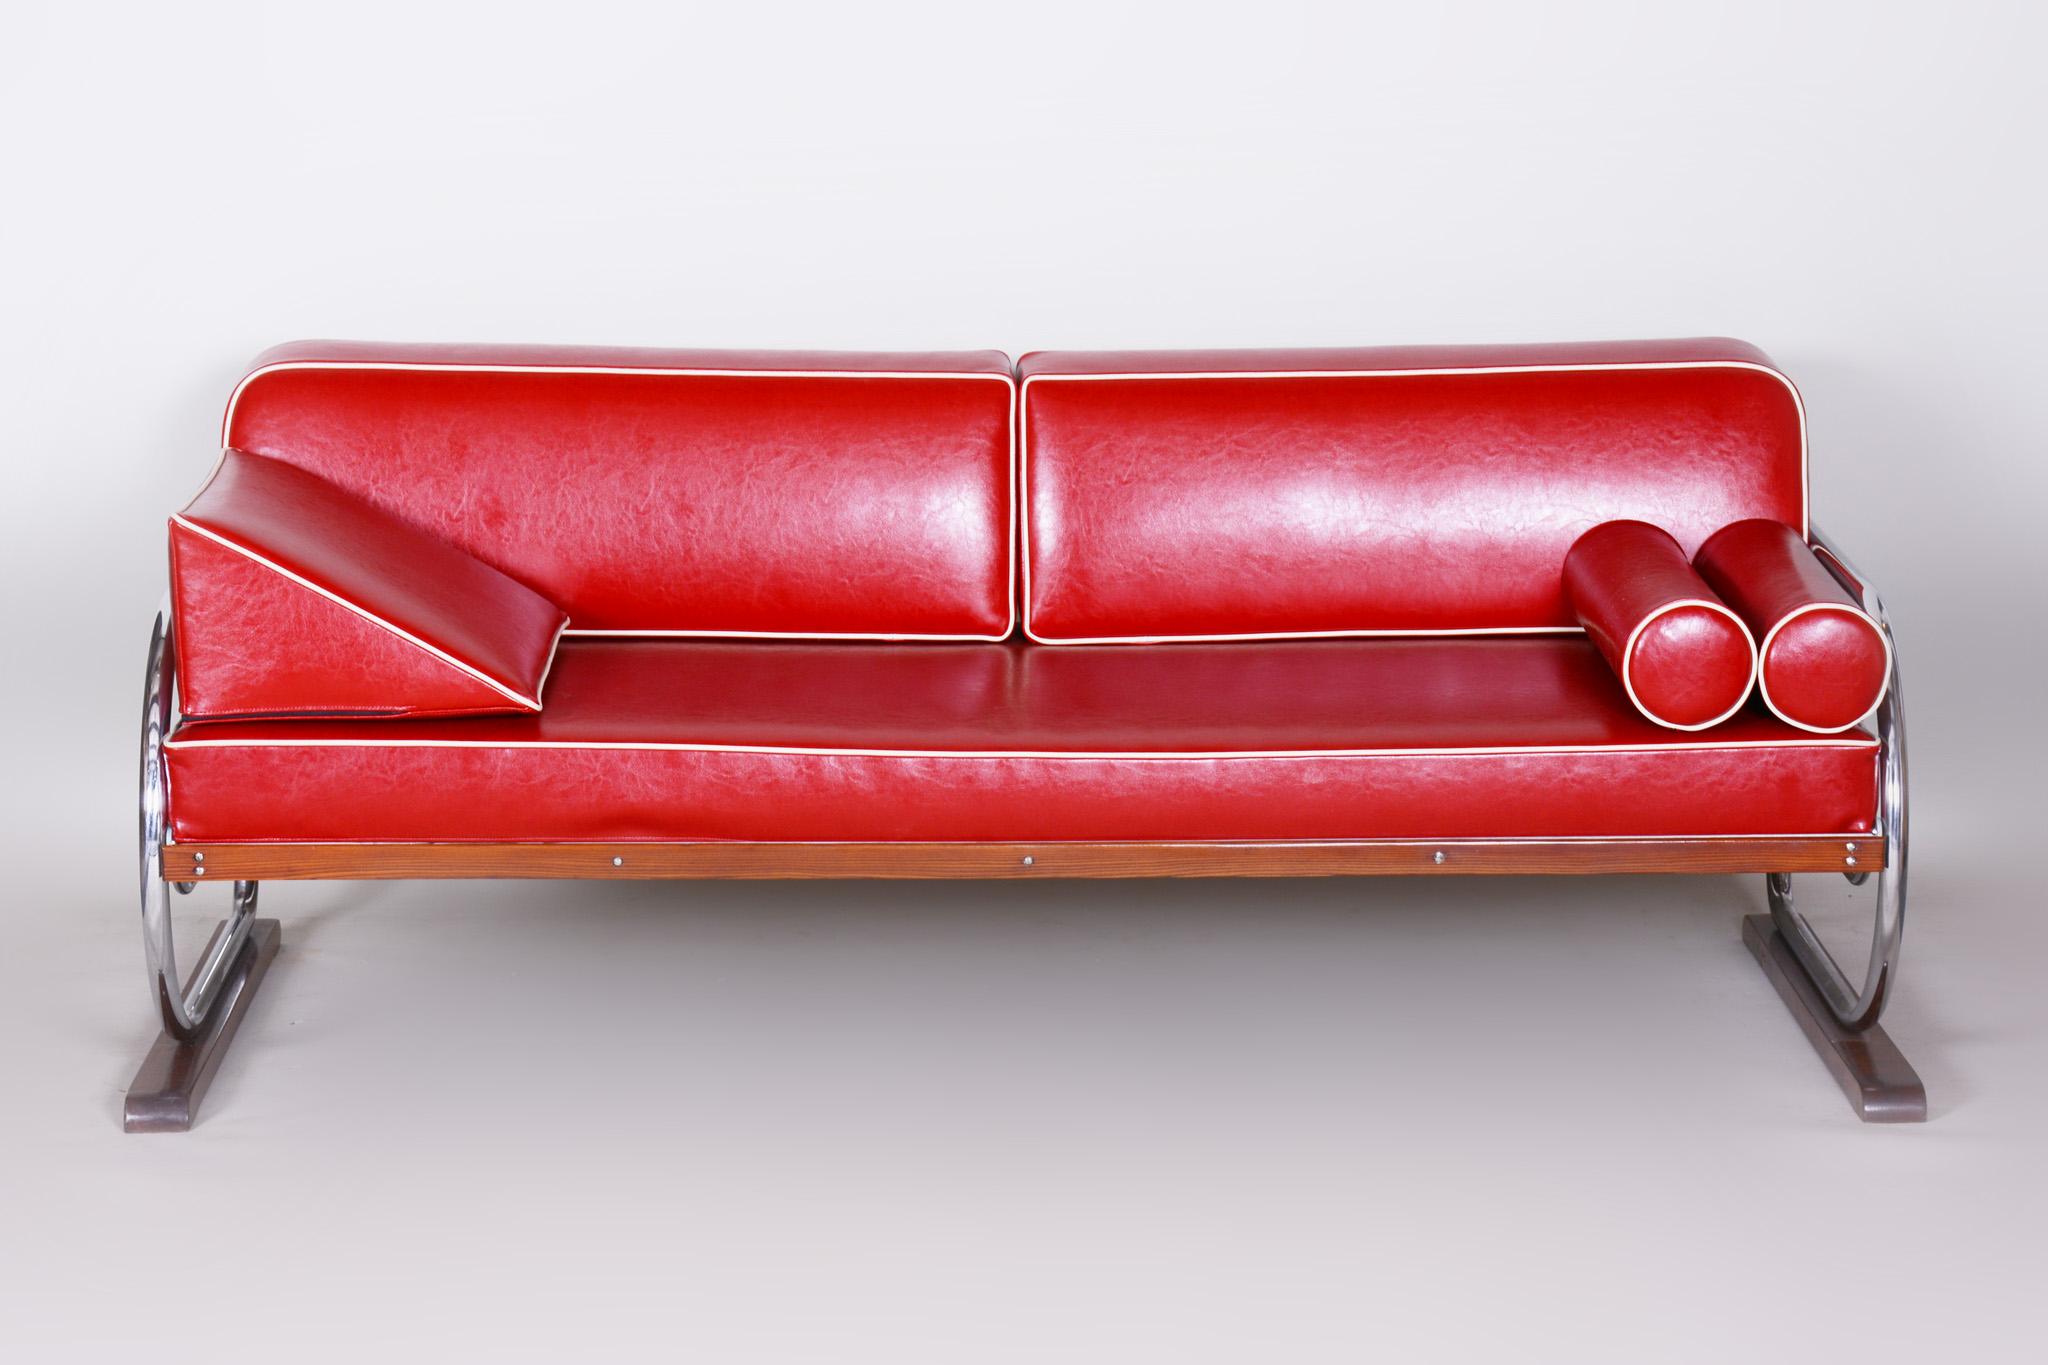 Sofa im Bauhaus-Stil mit verchromtem Stahlrohrgestell.
Hergestellt von Robert Slezák in den 1930er Jahren.
Das verchromte Stahlrohr ist in perfektem Originalzustand.
Gepolstert mit hochwertigem rotem Leder.
Quelle: Tschechoslowakei.